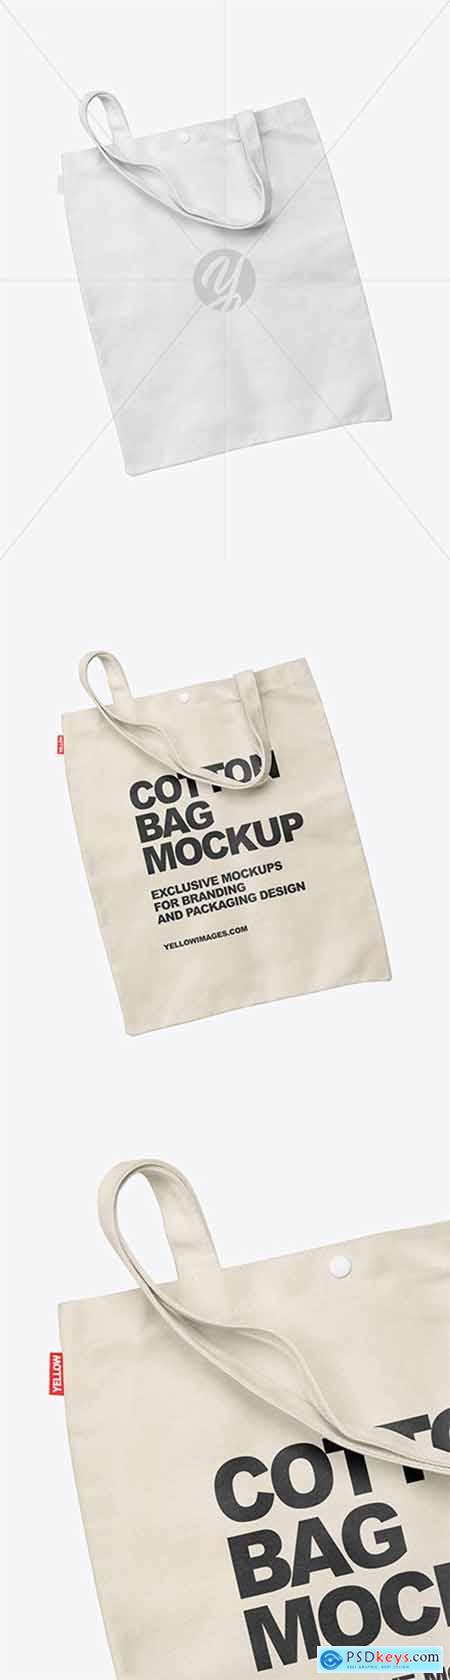 Cotton Bag Mockup 60419